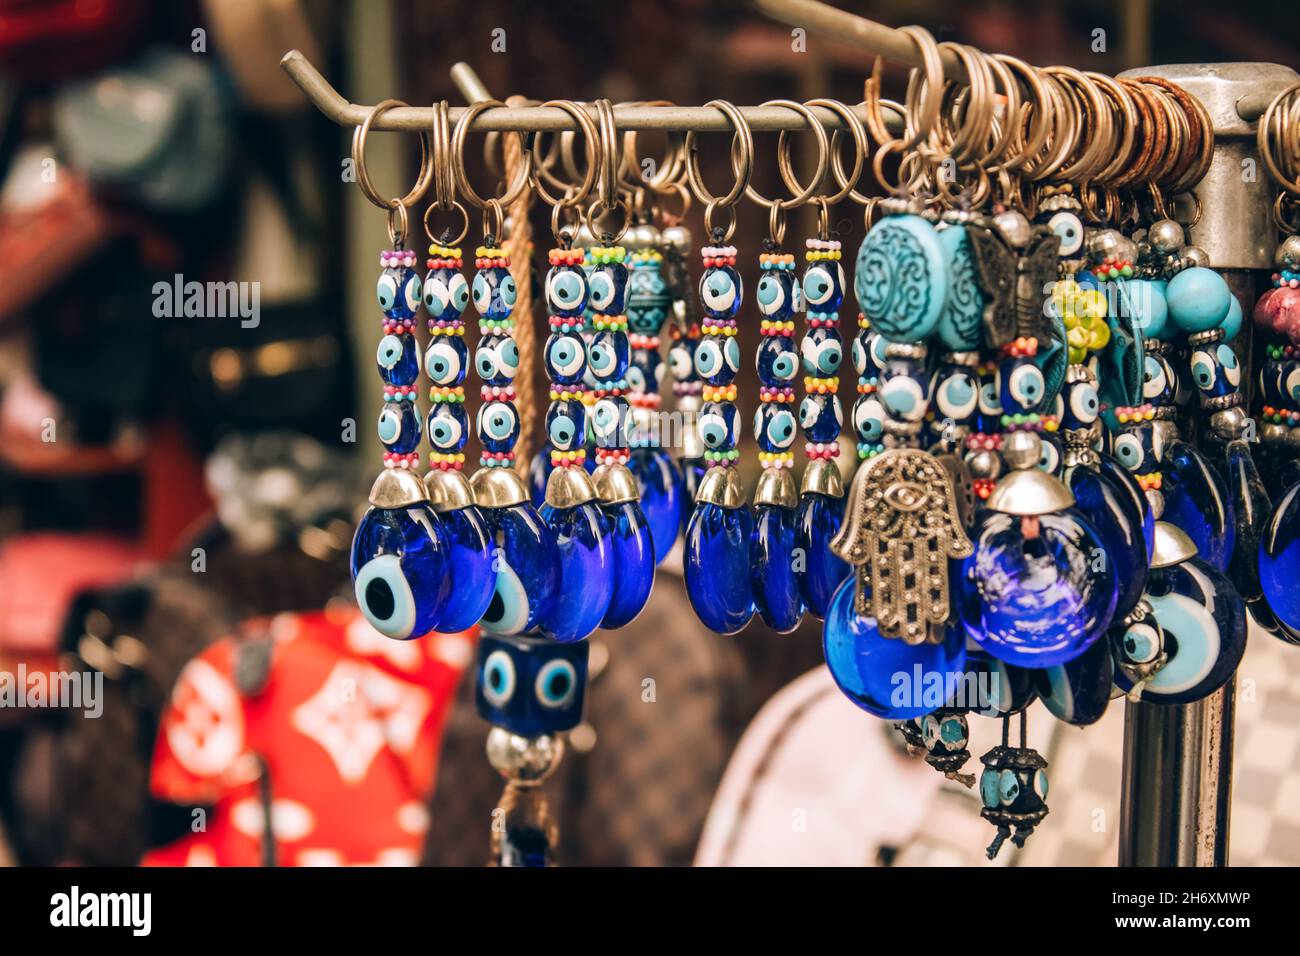 Traditionelle böse Augenperle - Schutzamulett im Souvenirladen. Beliebte touristische Souvenir und Talisman in verschiedenen Ländern auf der ganzen Welt Stockfoto